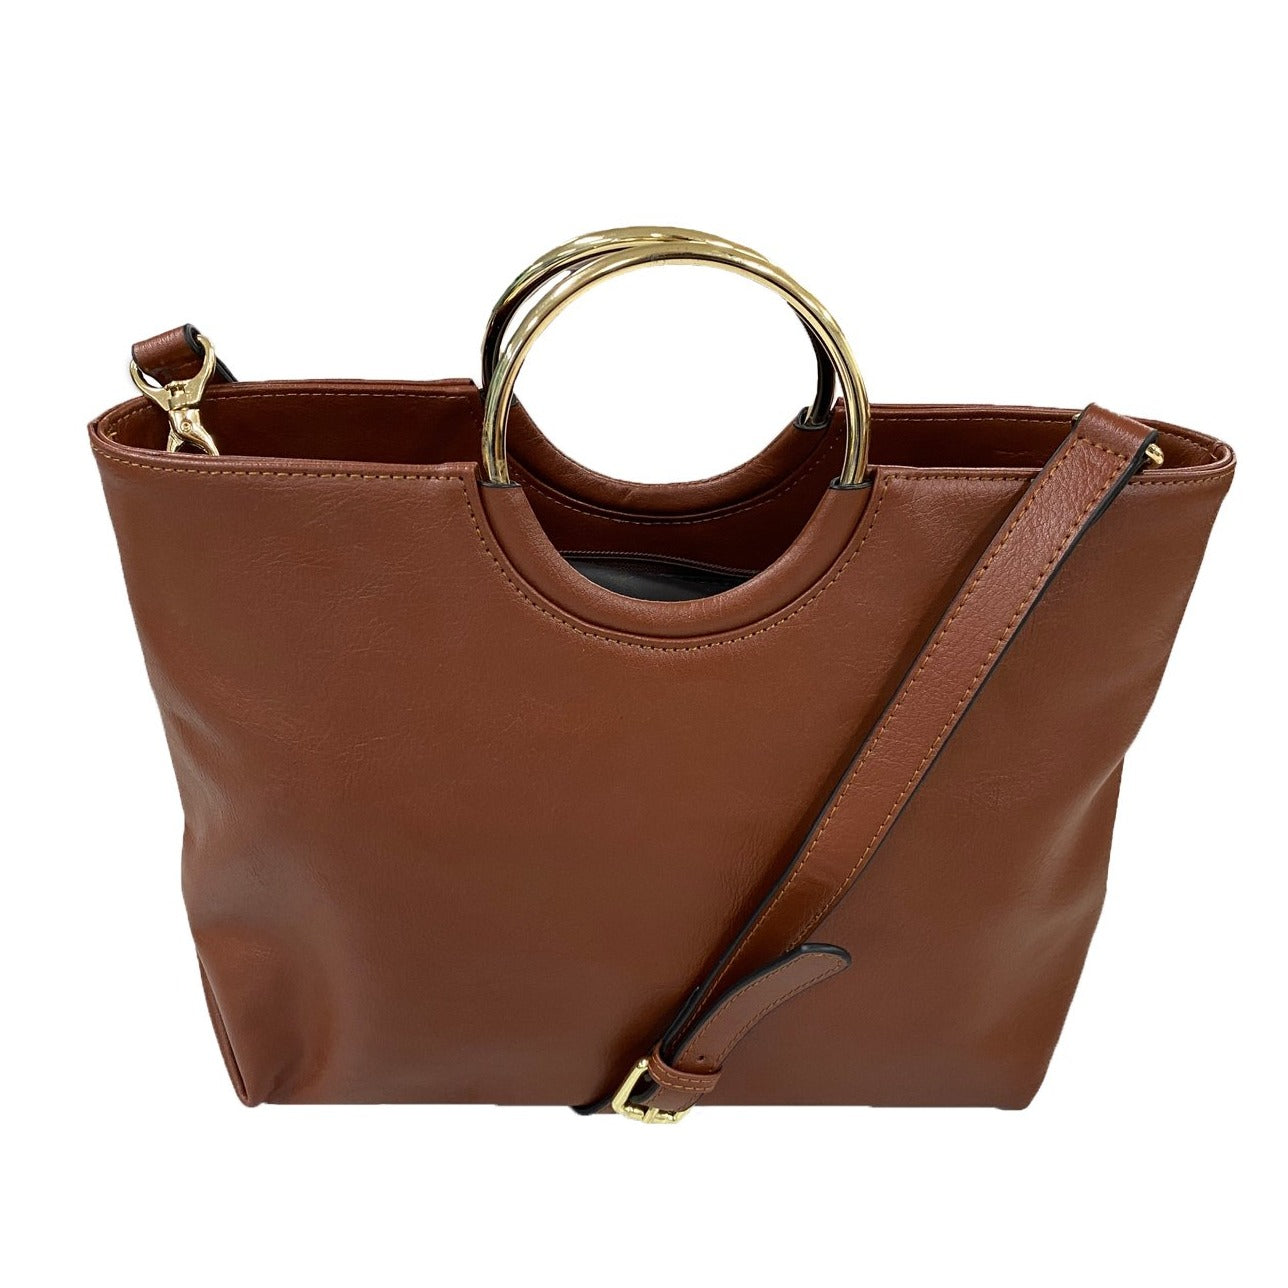 Leather Crossbody Bag With Pocket Tan Leather Shoulder Bag - Etsy